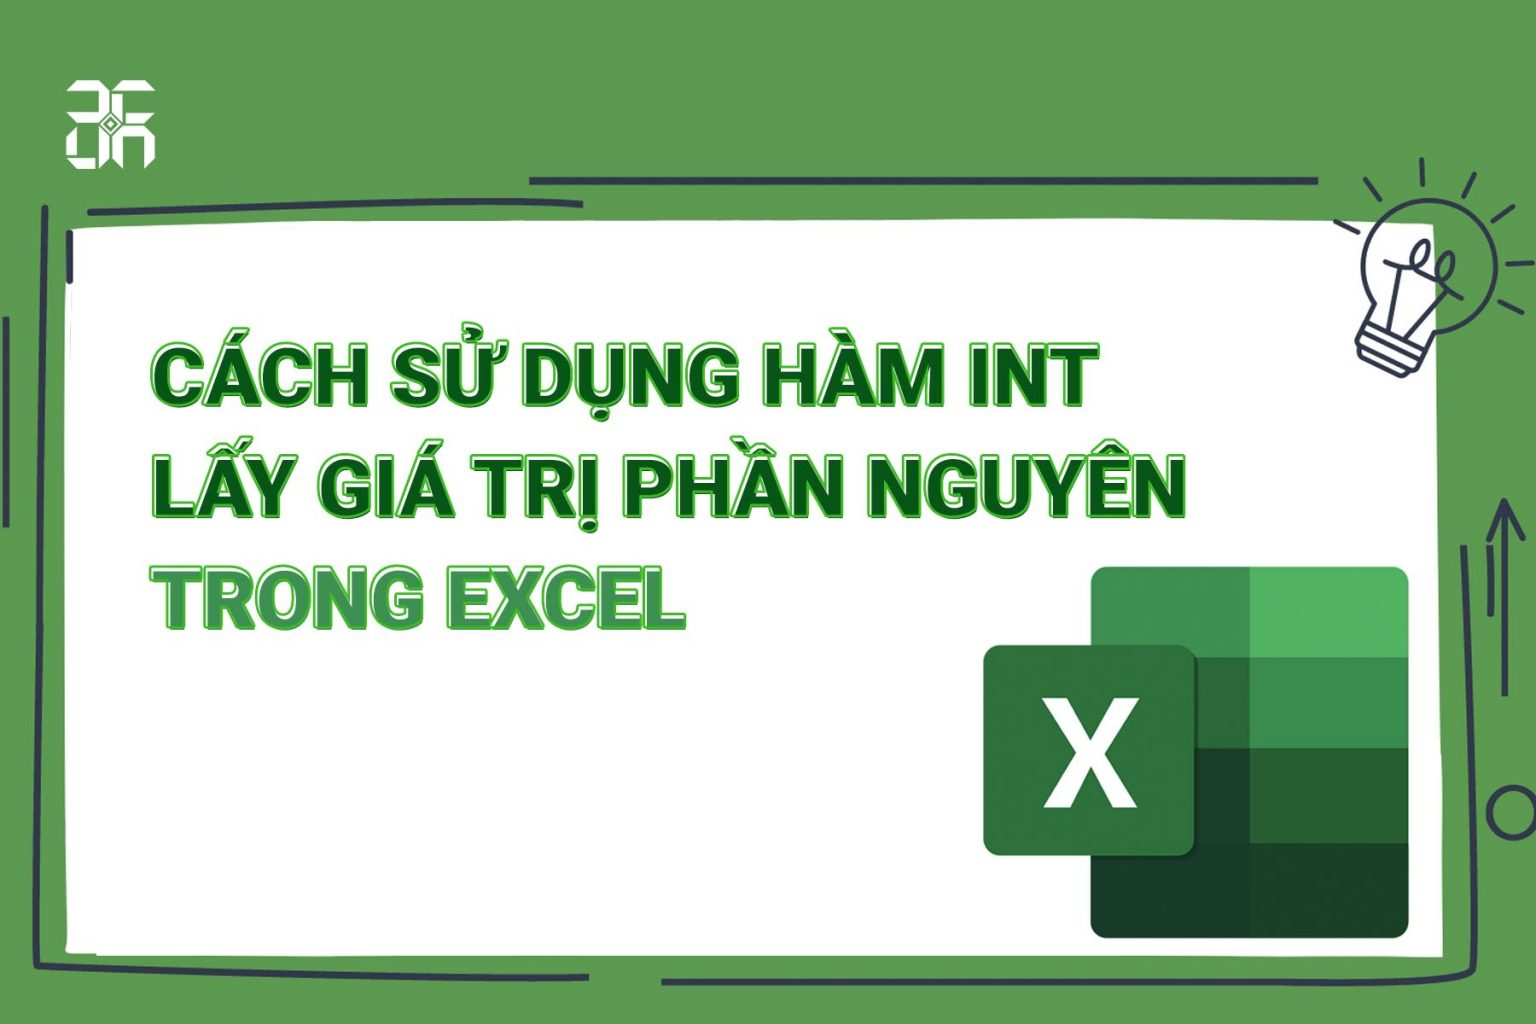 Cách sử dụng hàm INT lấy giá trị phần nguyên trong Excel mà bạn cần biết - 1